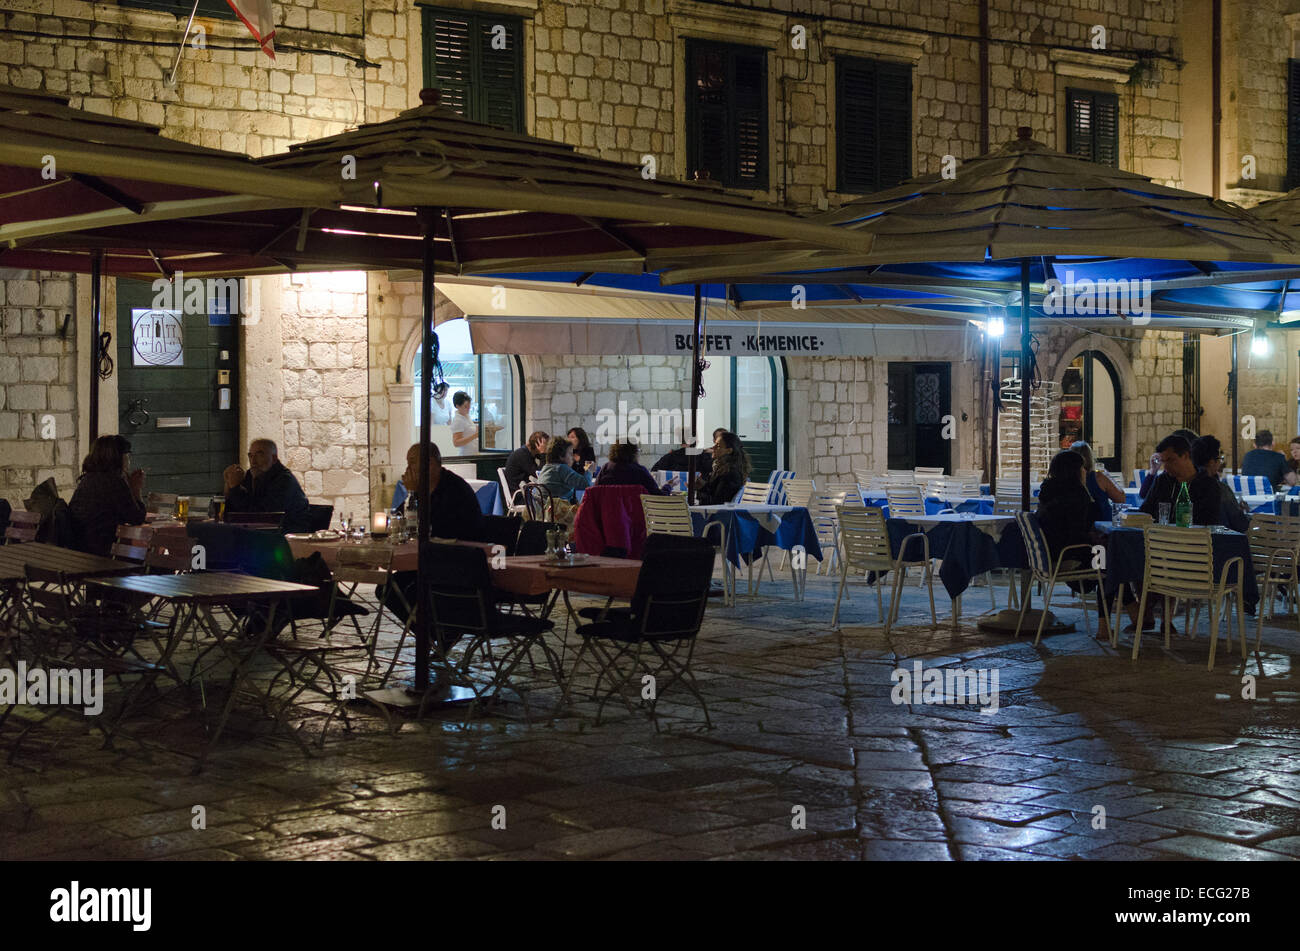 DUBROVNIK, Croatie - 16 MAI 2013 : nuit, les tables d'un restaurant de rue dans la vieille ville de Dubrovnik. Le 16 mai 2013 à Dubrovni Banque D'Images